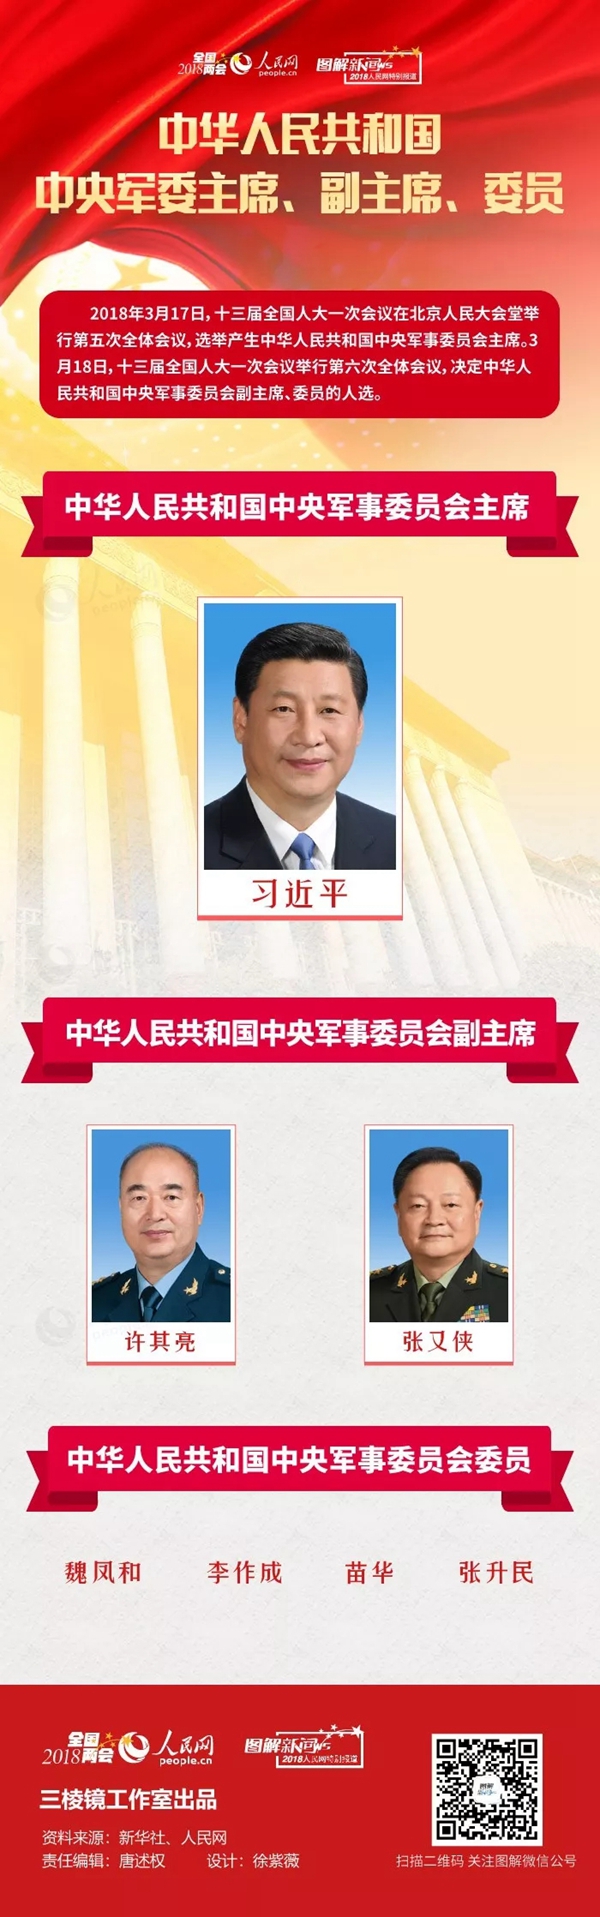 中国历代主席顺序照片图片